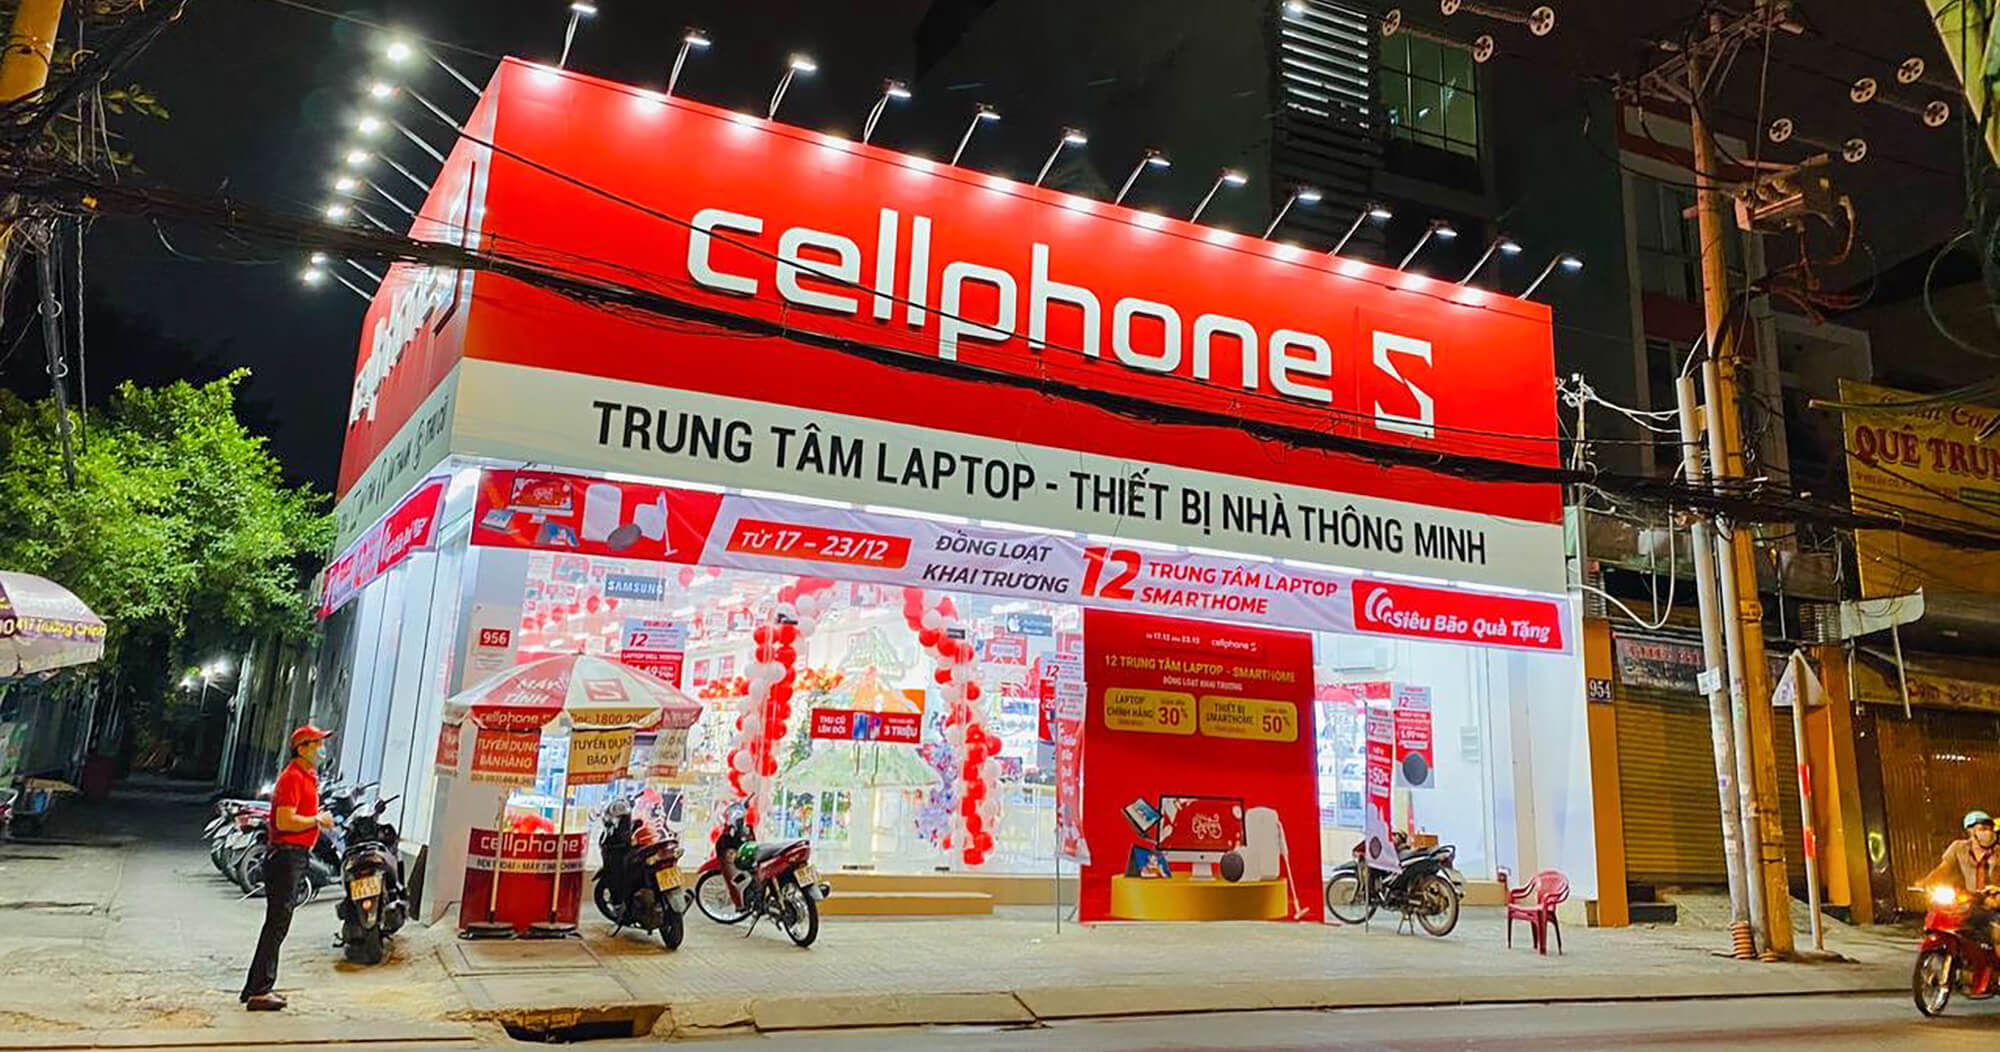 Cellphone S cung cấp dịch vụ di động của nhà mạng Vinaphone